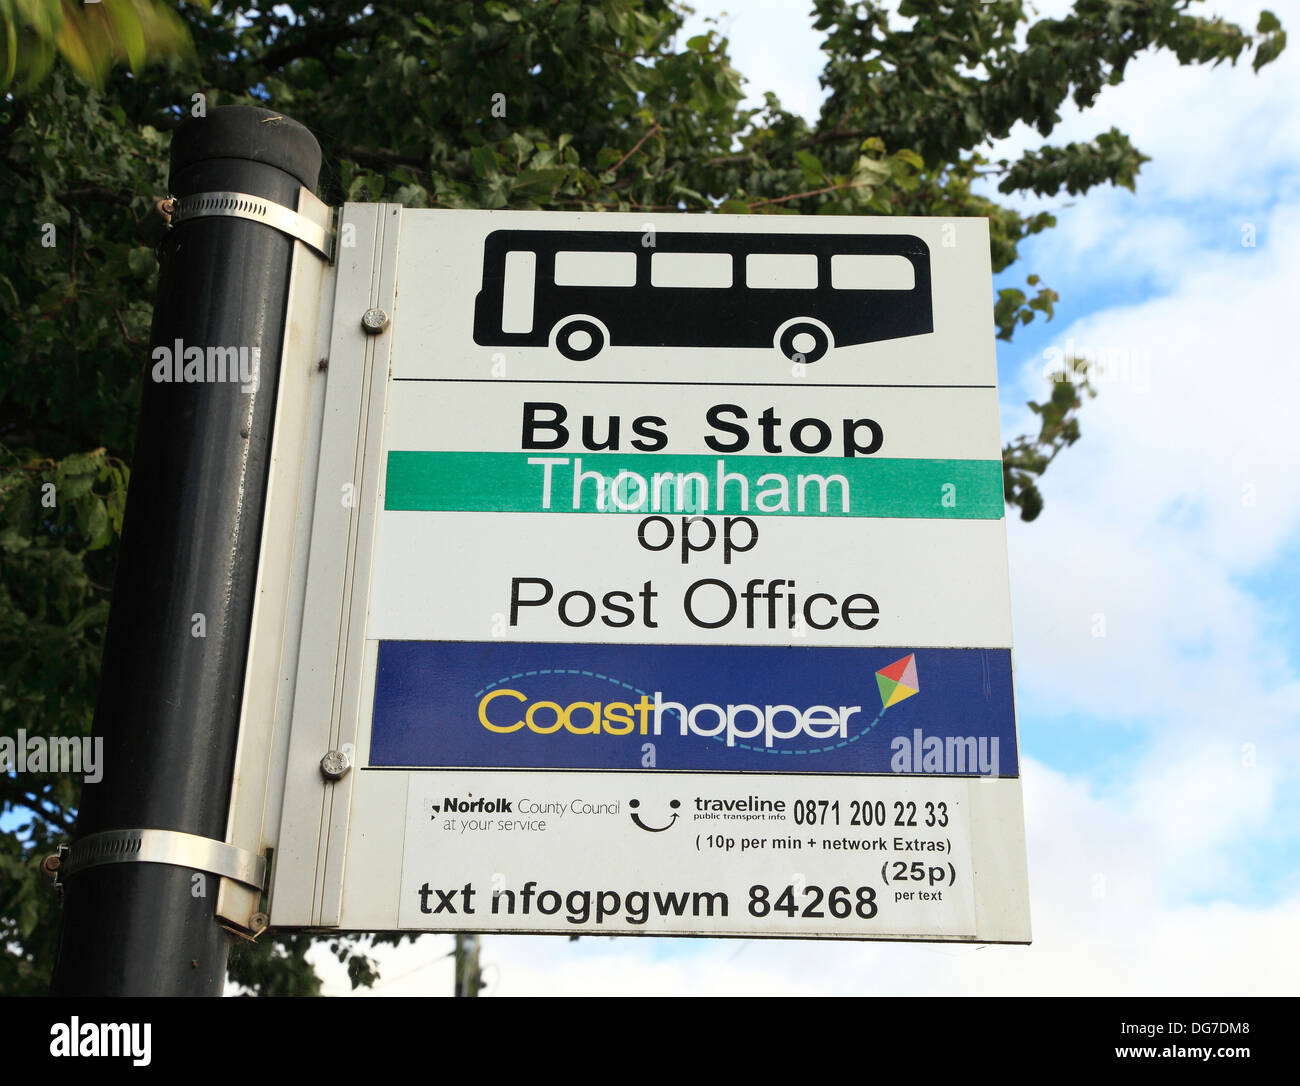 Arrêt de Bus Coasthopper, Thorham, Norfolk, England UK transport public service, route côtière de la trémie de la côte Banque D'Images